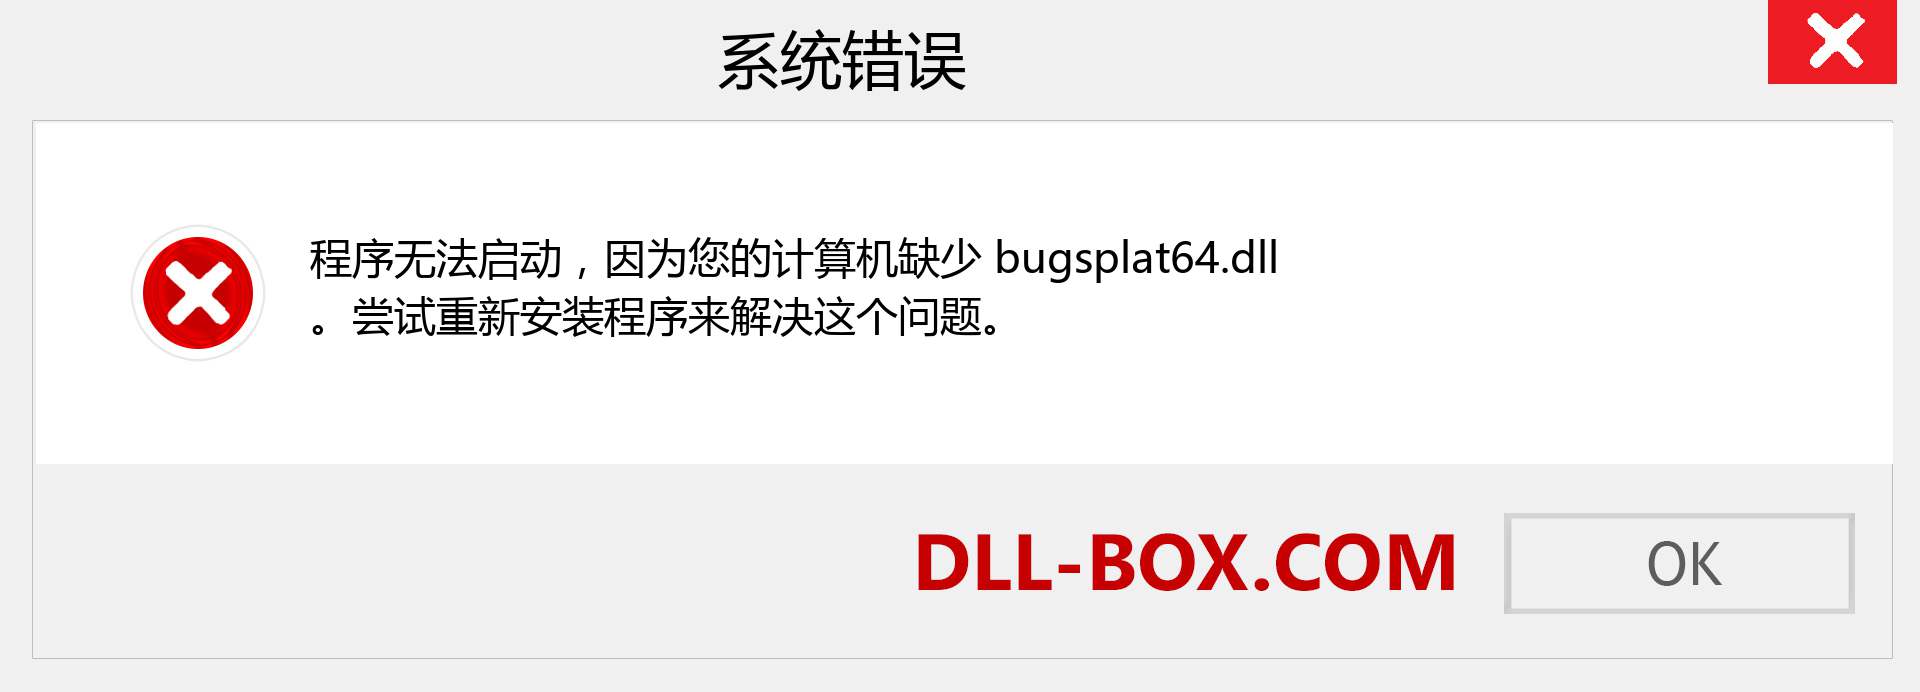 bugsplat64.dll 文件丢失？。 适用于 Windows 7、8、10 的下载 - 修复 Windows、照片、图像上的 bugsplat64 dll 丢失错误